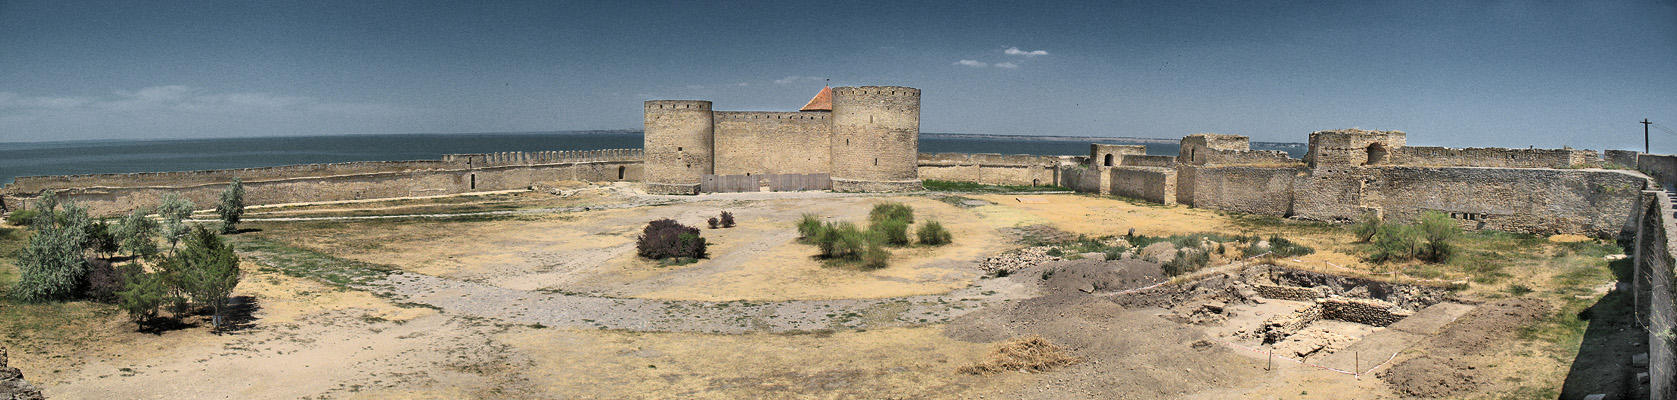 Fortress in Akkerman.